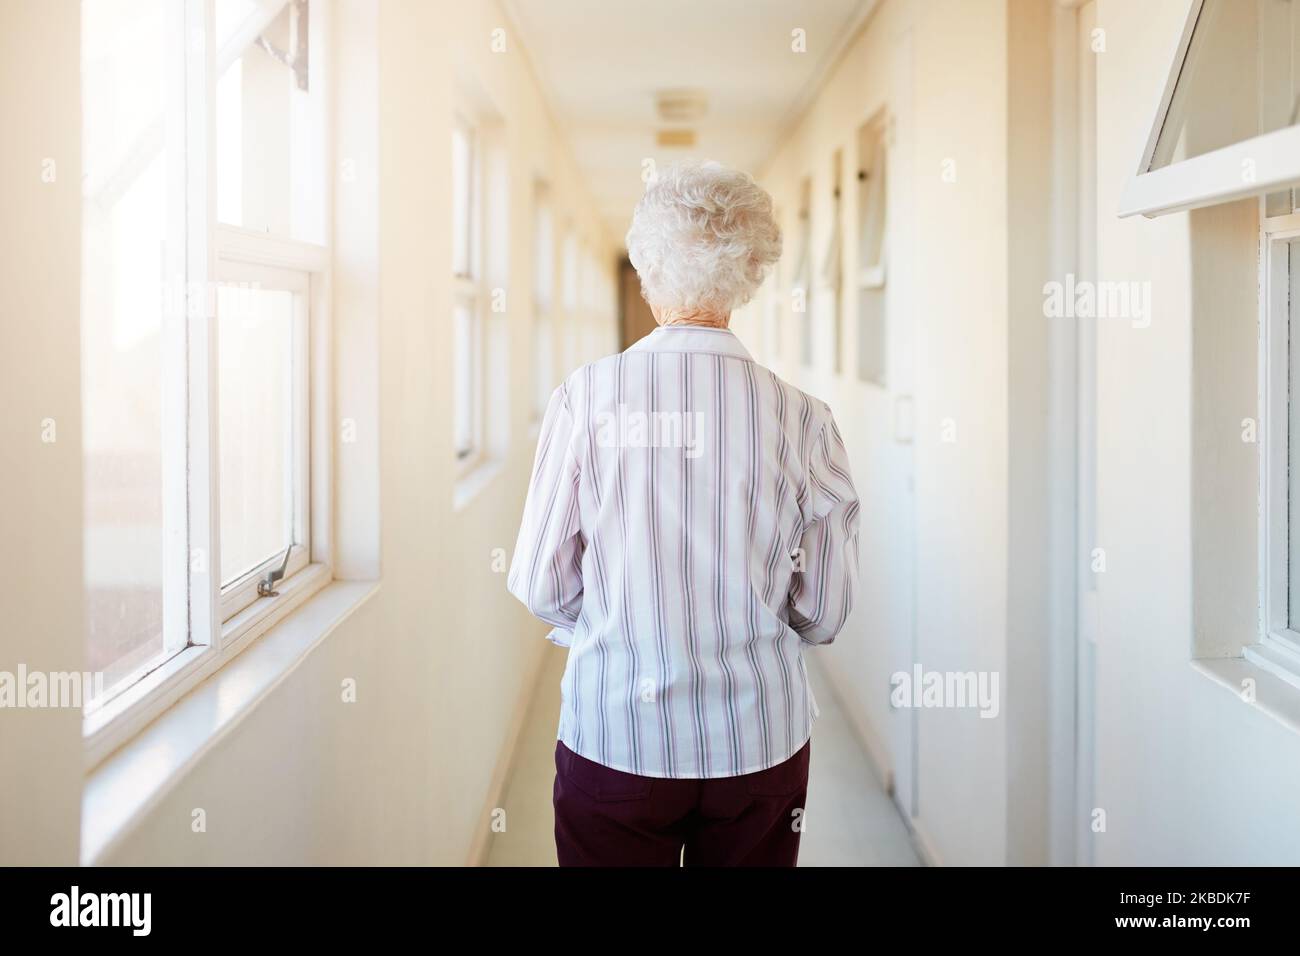 Où elle appelle maintenant à la maison. Vue arrière d'une femme âgée marchant dans un couloir dans une maison de retraite. Banque D'Images